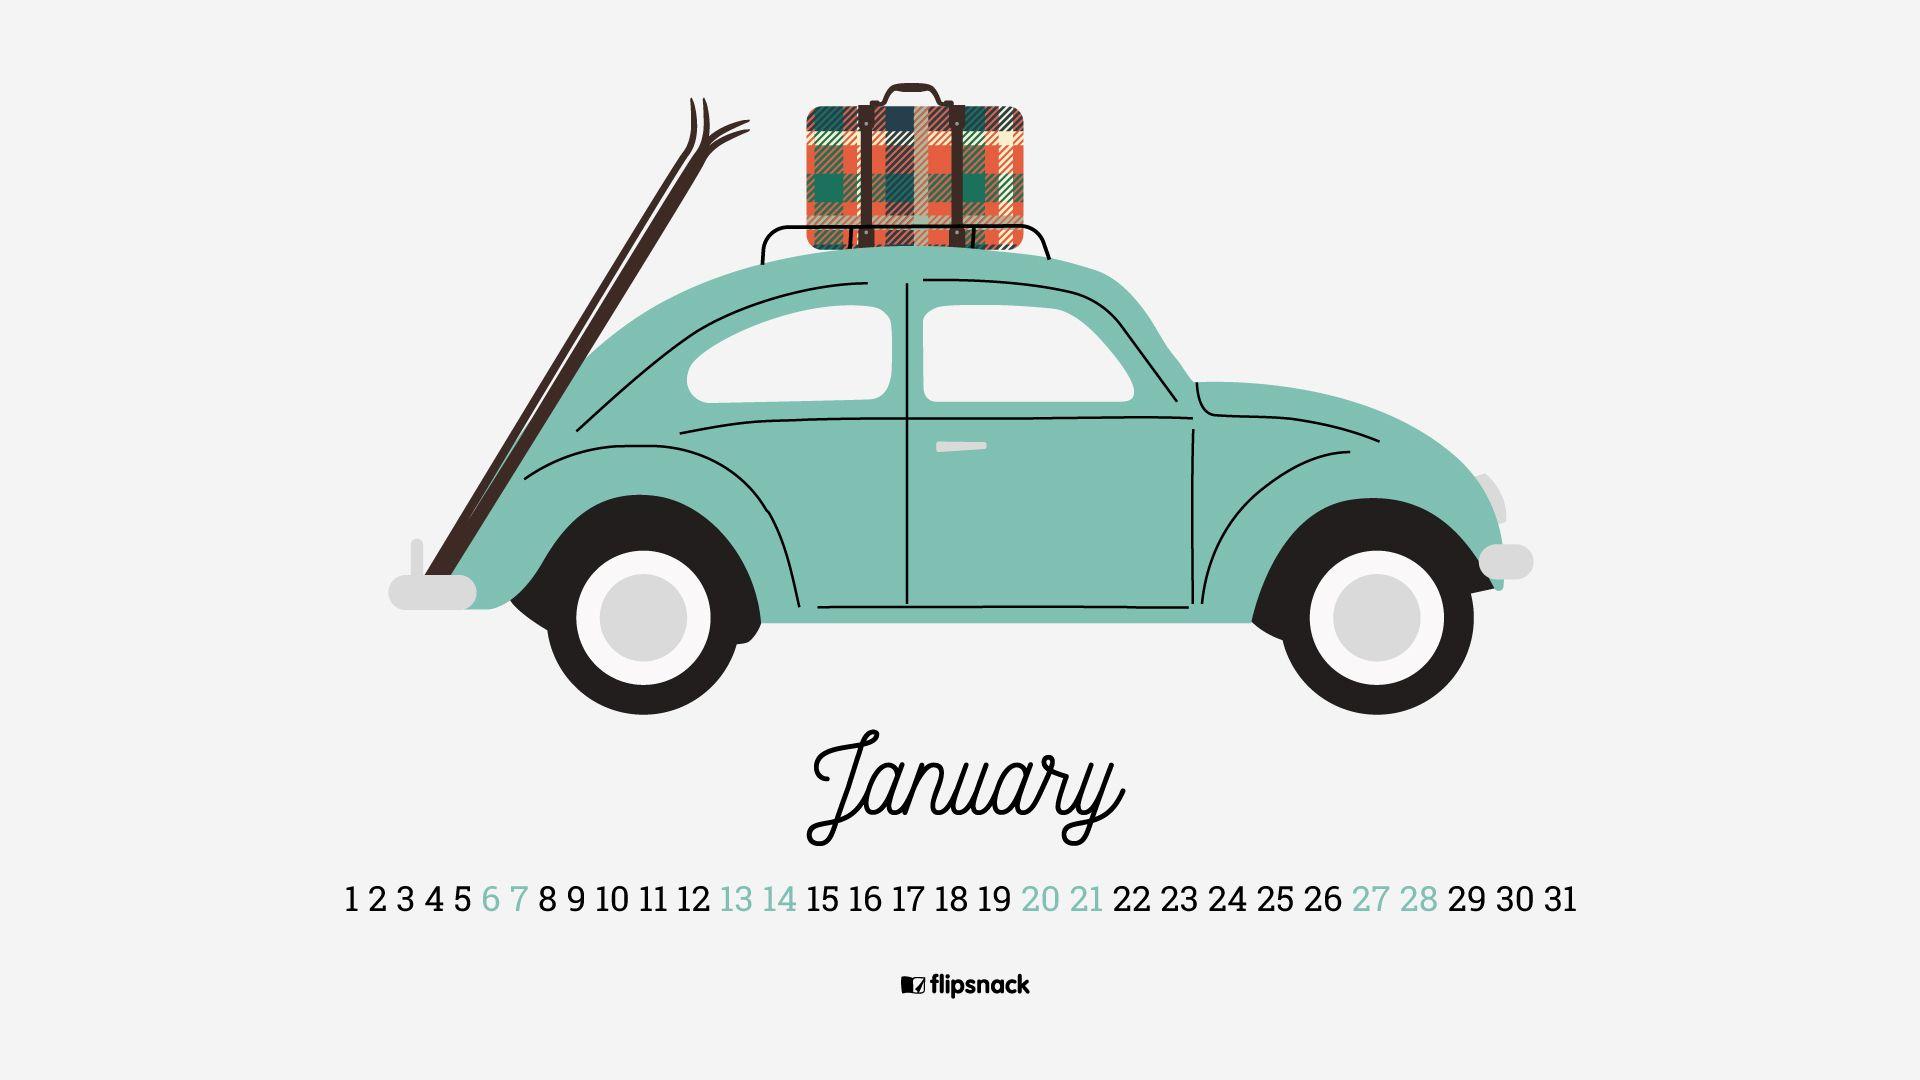 January 2018 calendar wallpaper for desktop background